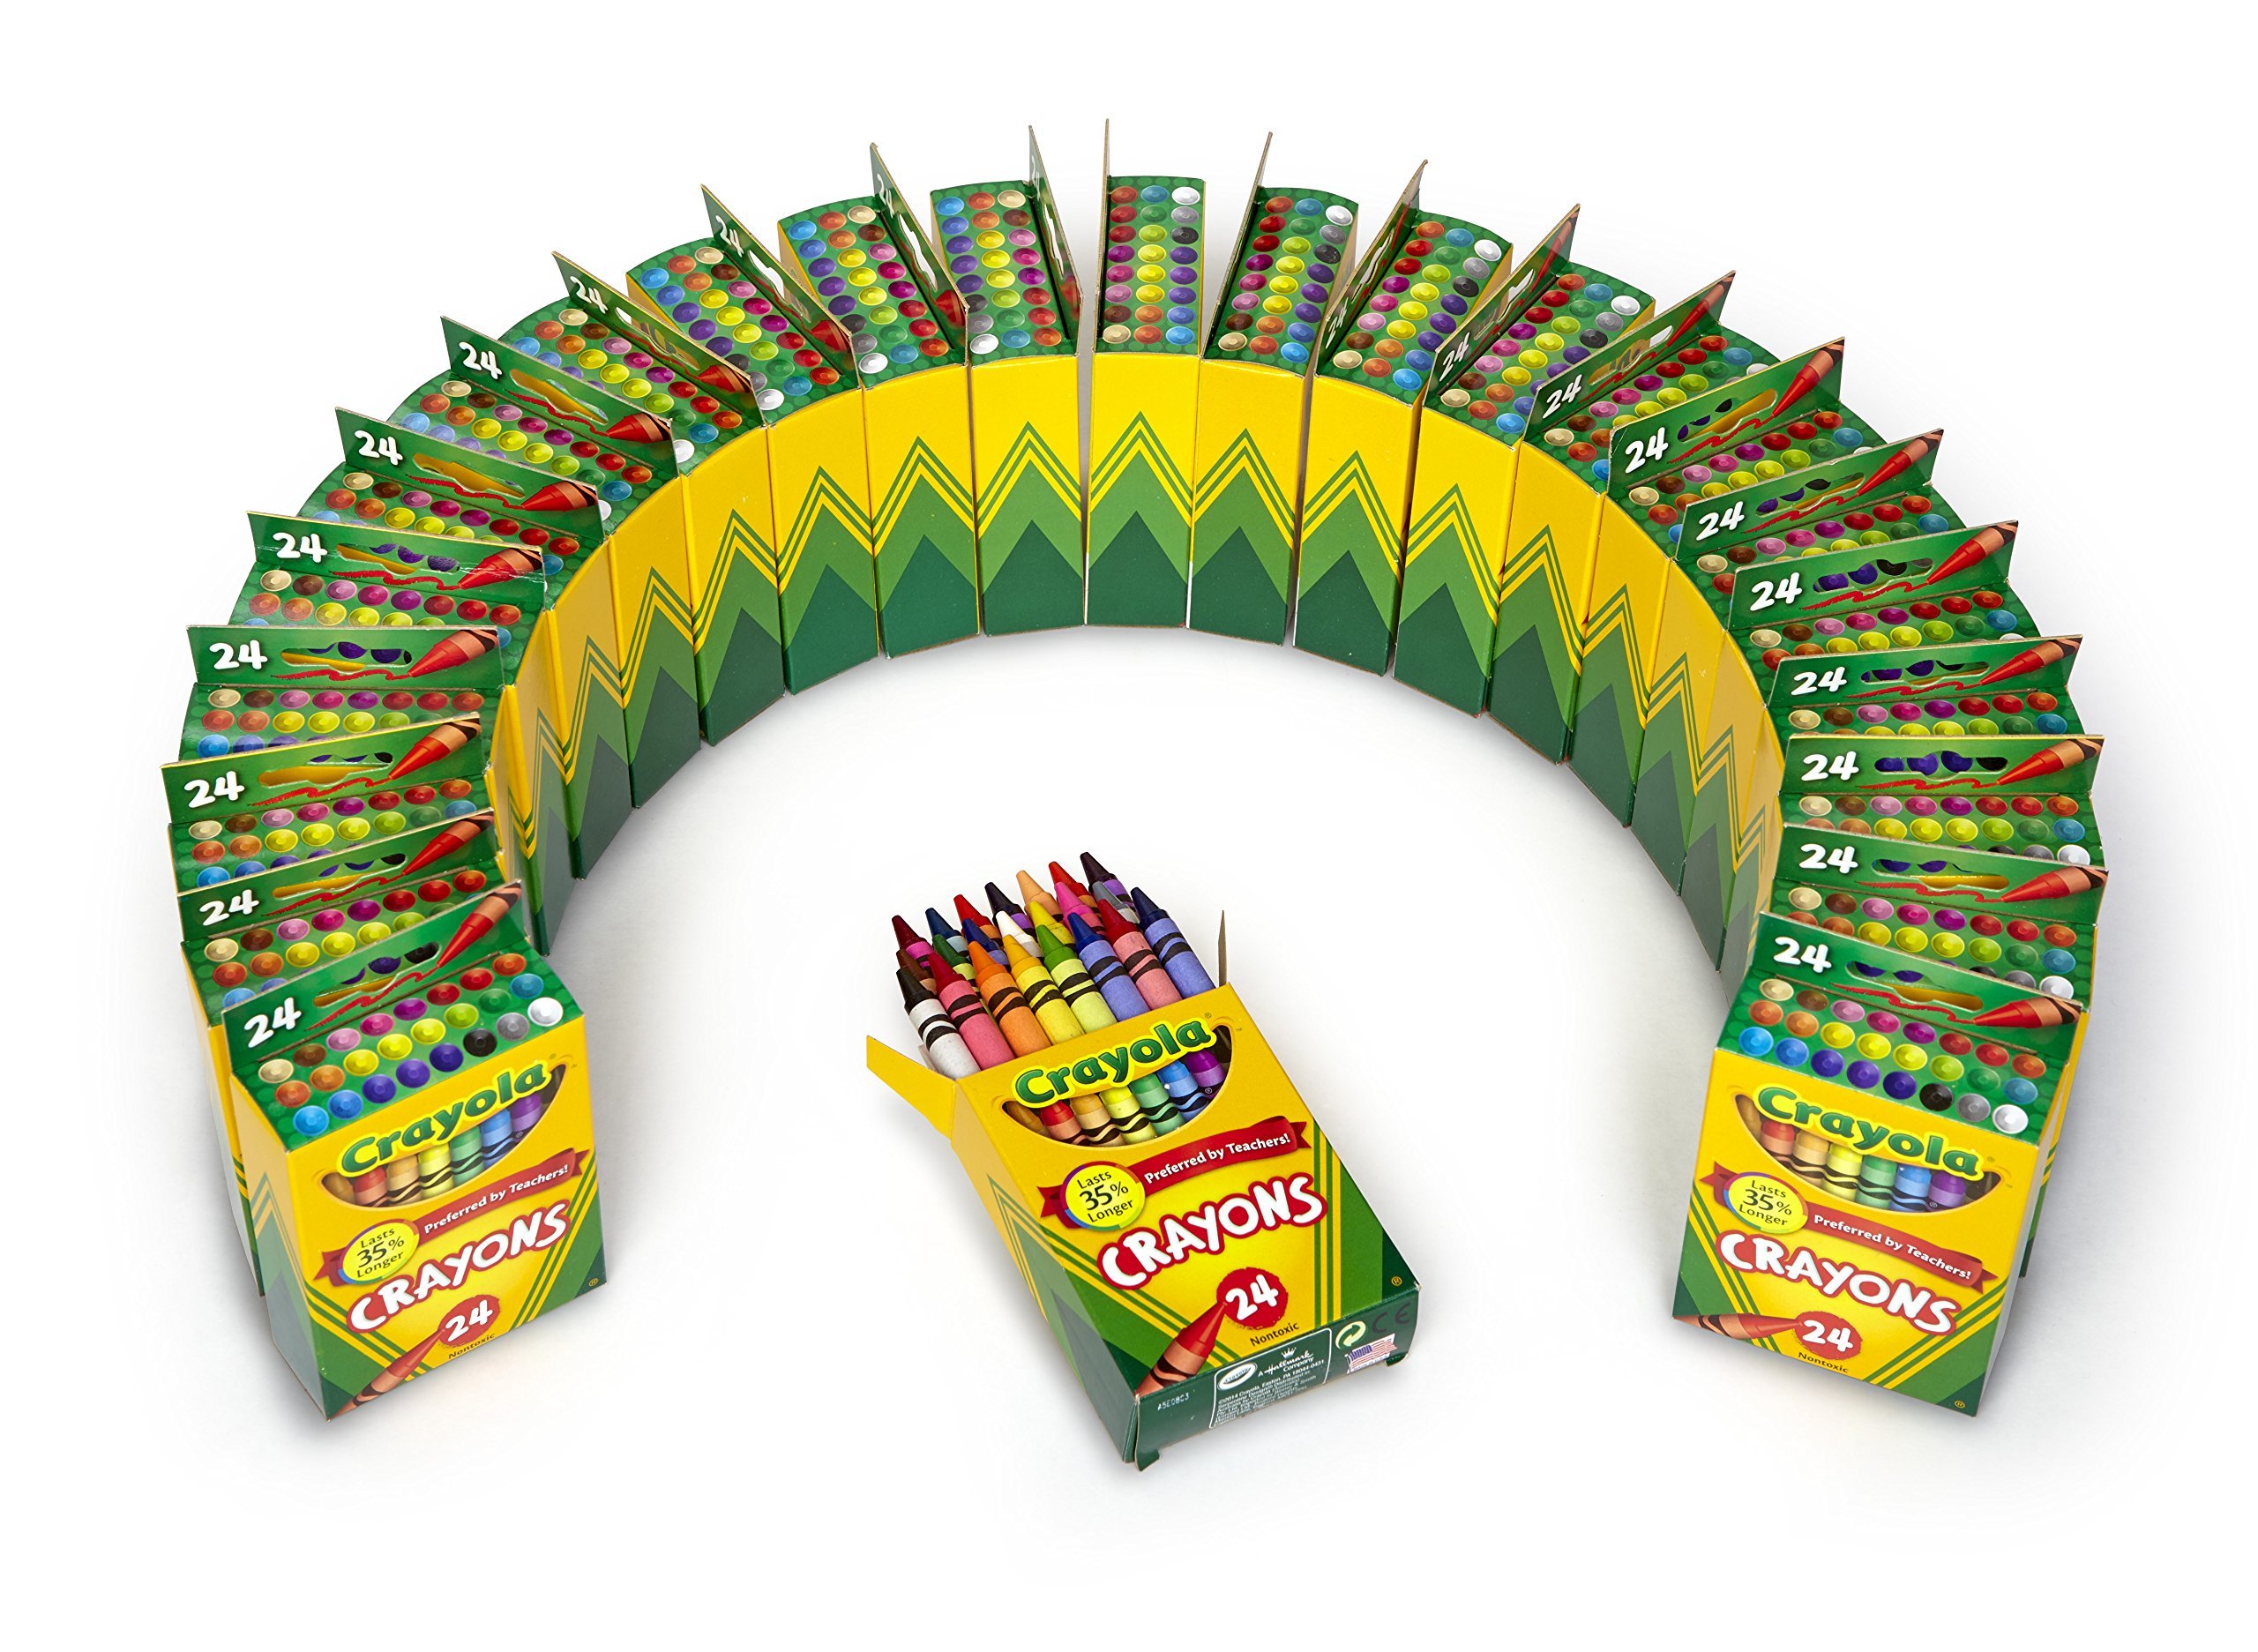 Crayola Crayons 24 Boxes, 24 Crayons per Box - image 3 of 7